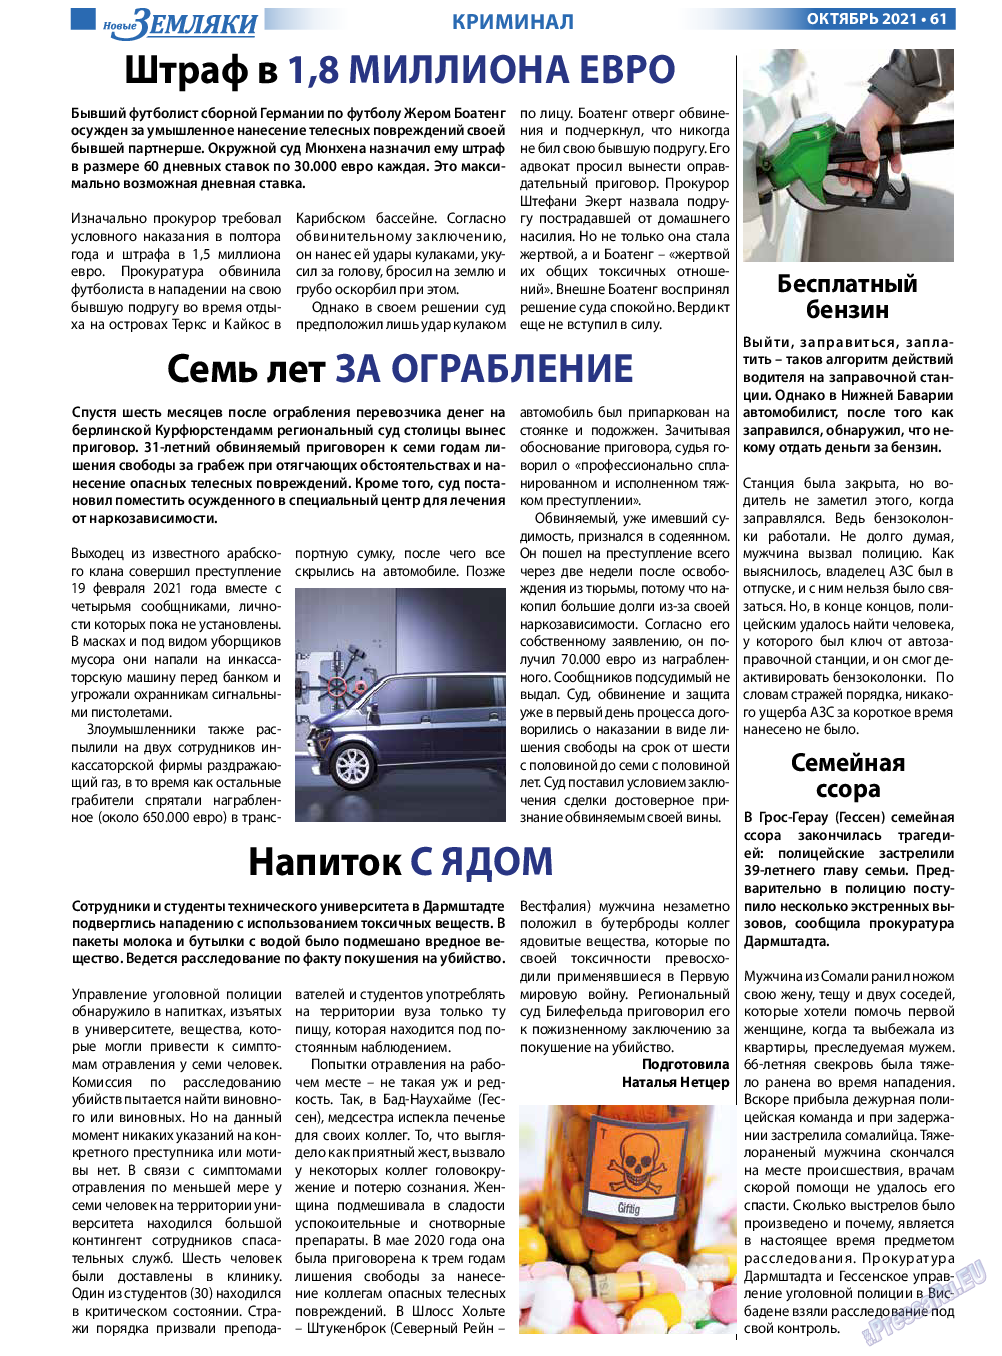 Новые Земляки, газета. 2021 №10 стр.61